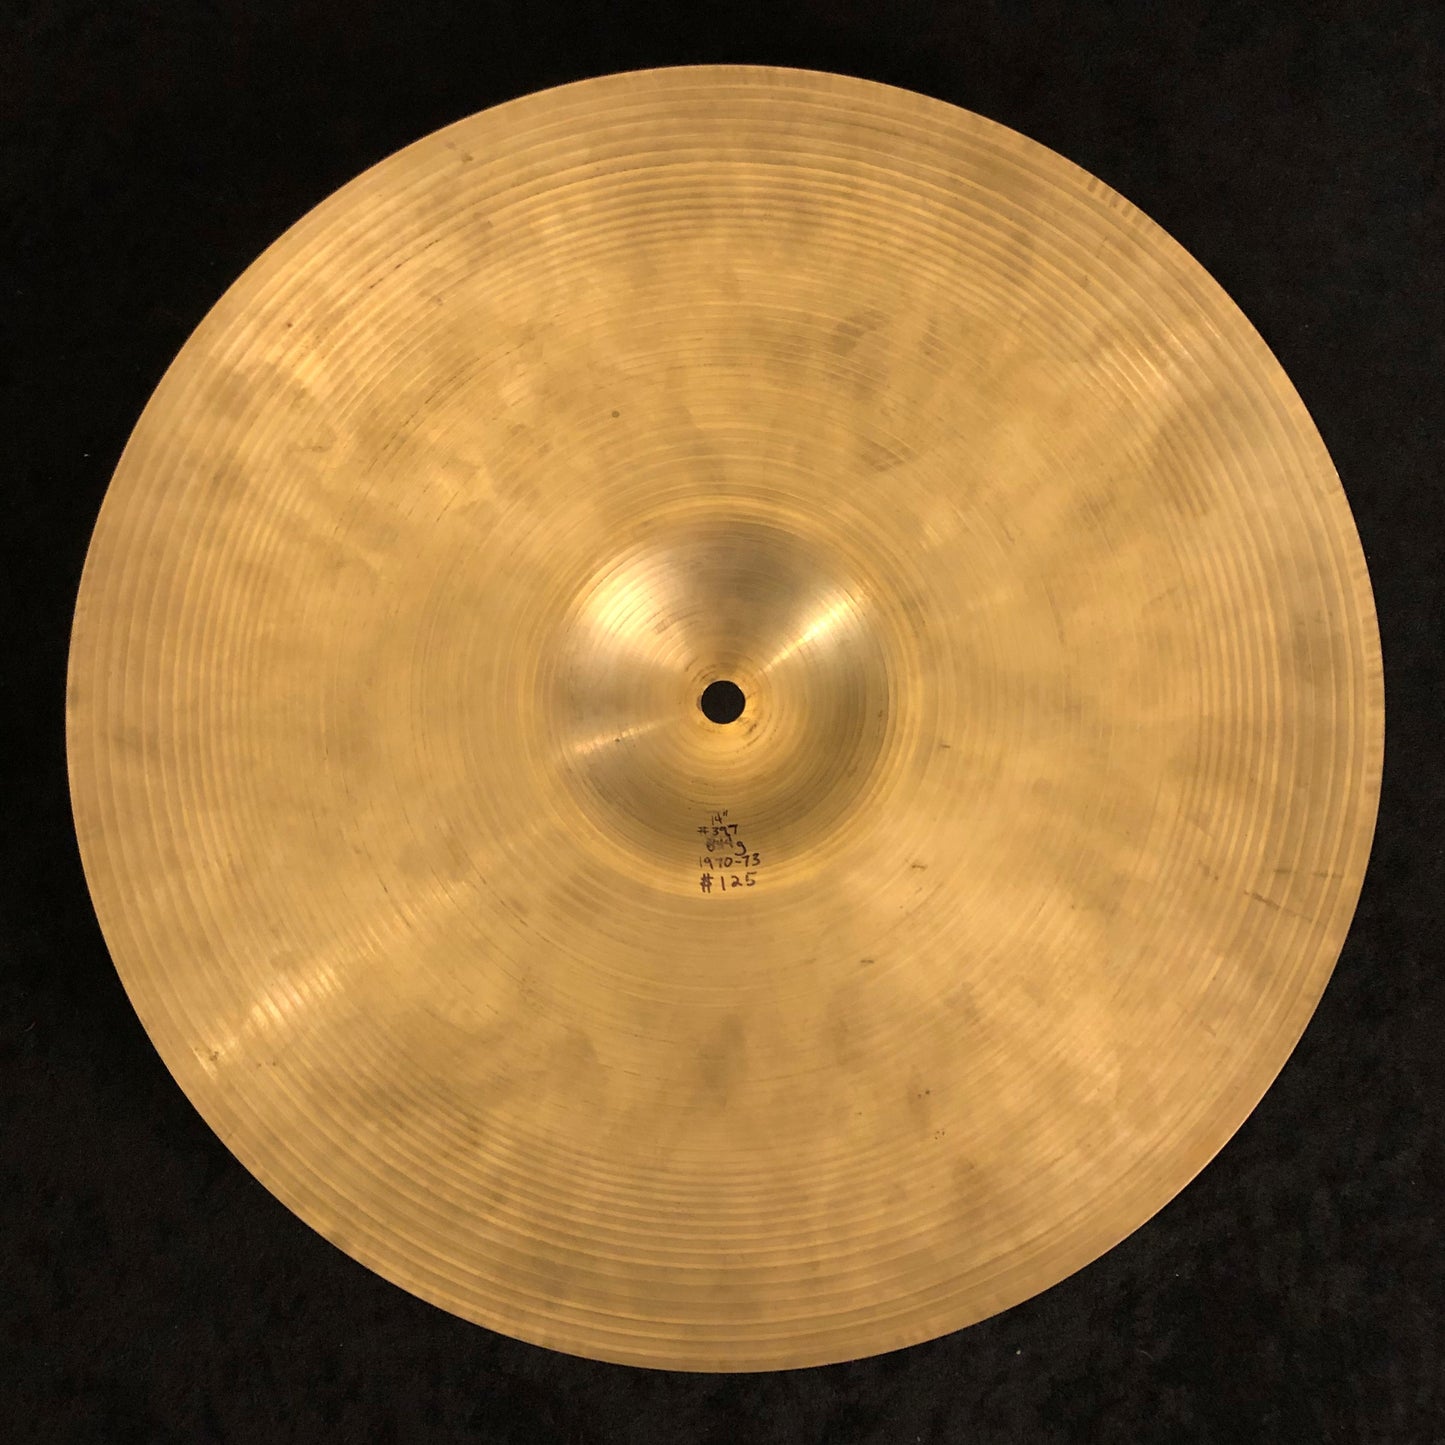 14" Zildjian A Early 1970s Hi-Hat Cymbal 844g #397